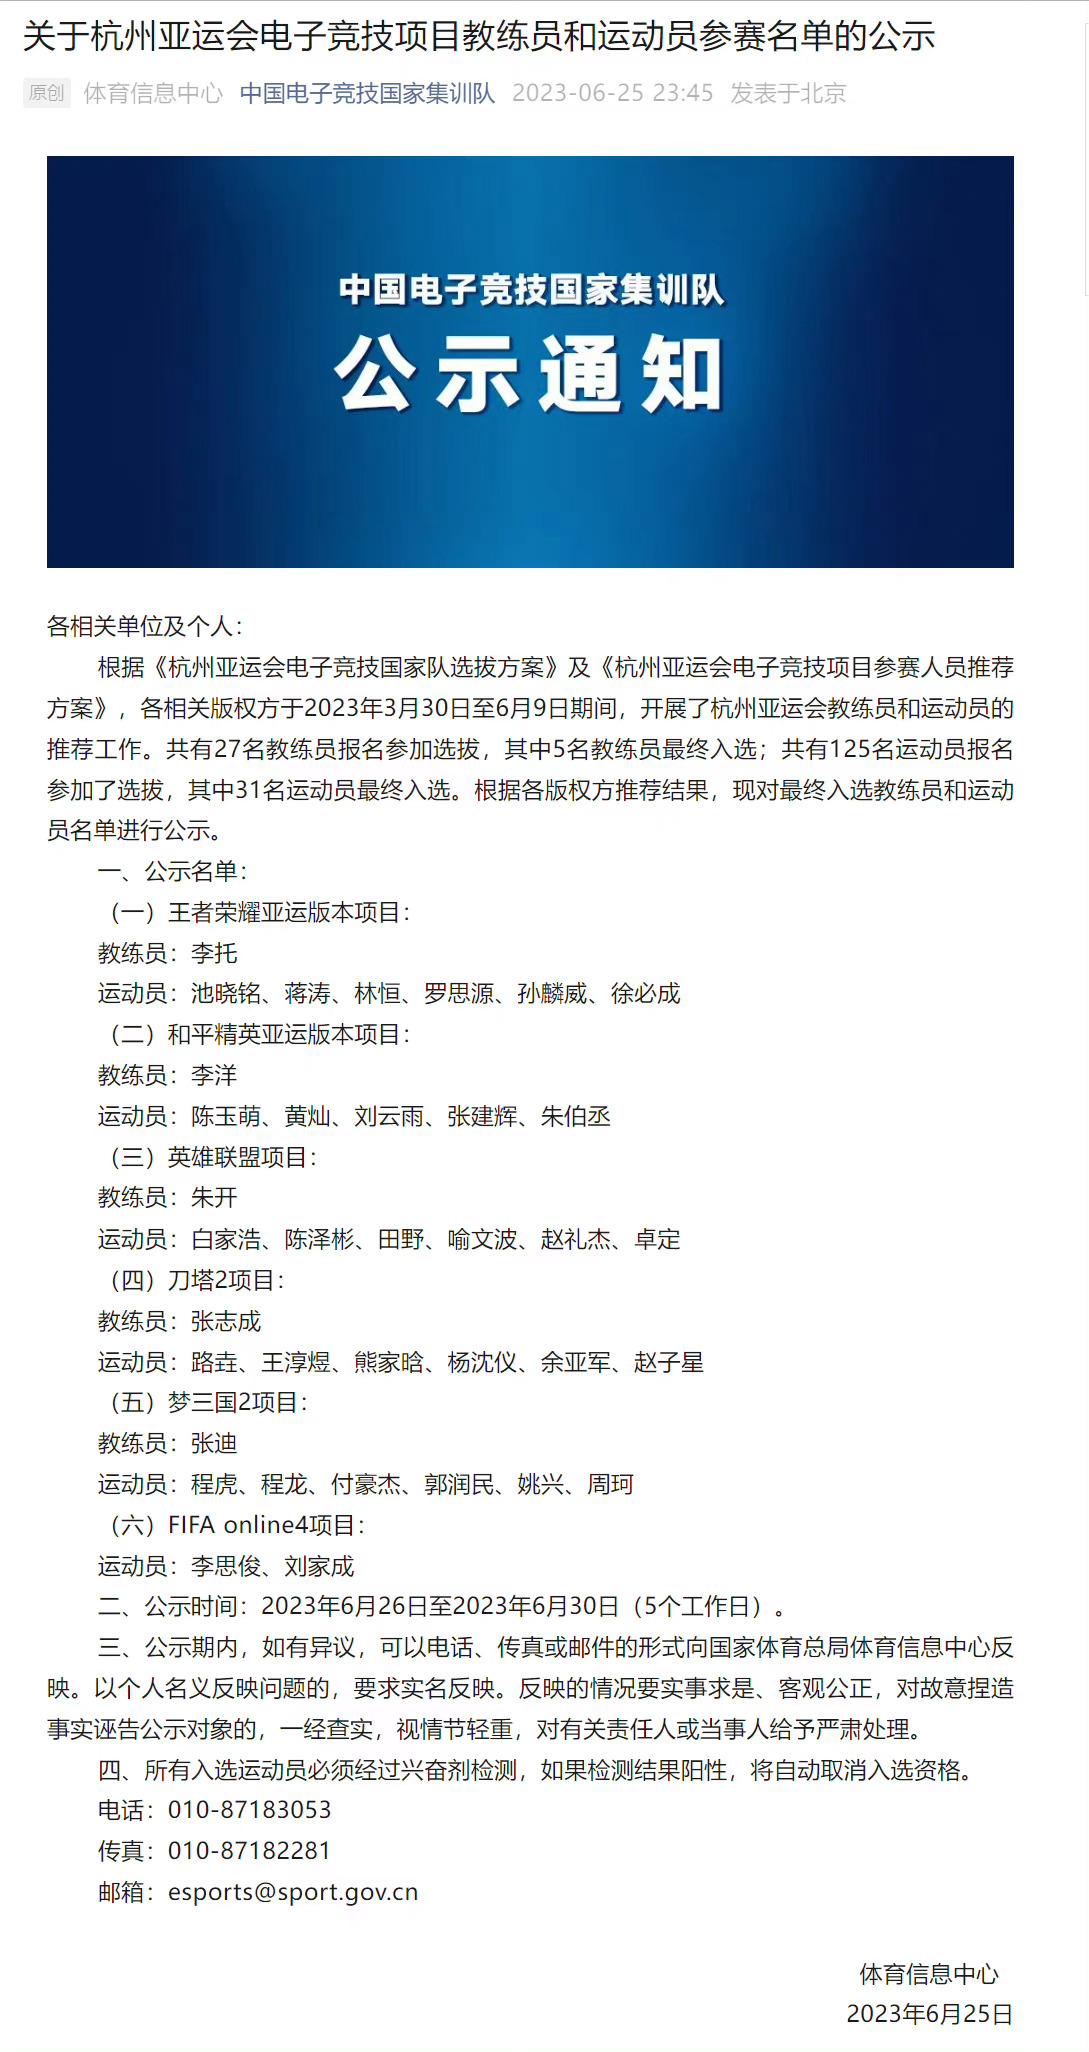 中国队亚运会名单：白家浩、陈泽彬、田野、喻文波、赵礼杰、卓定

你觉得这个阵容如